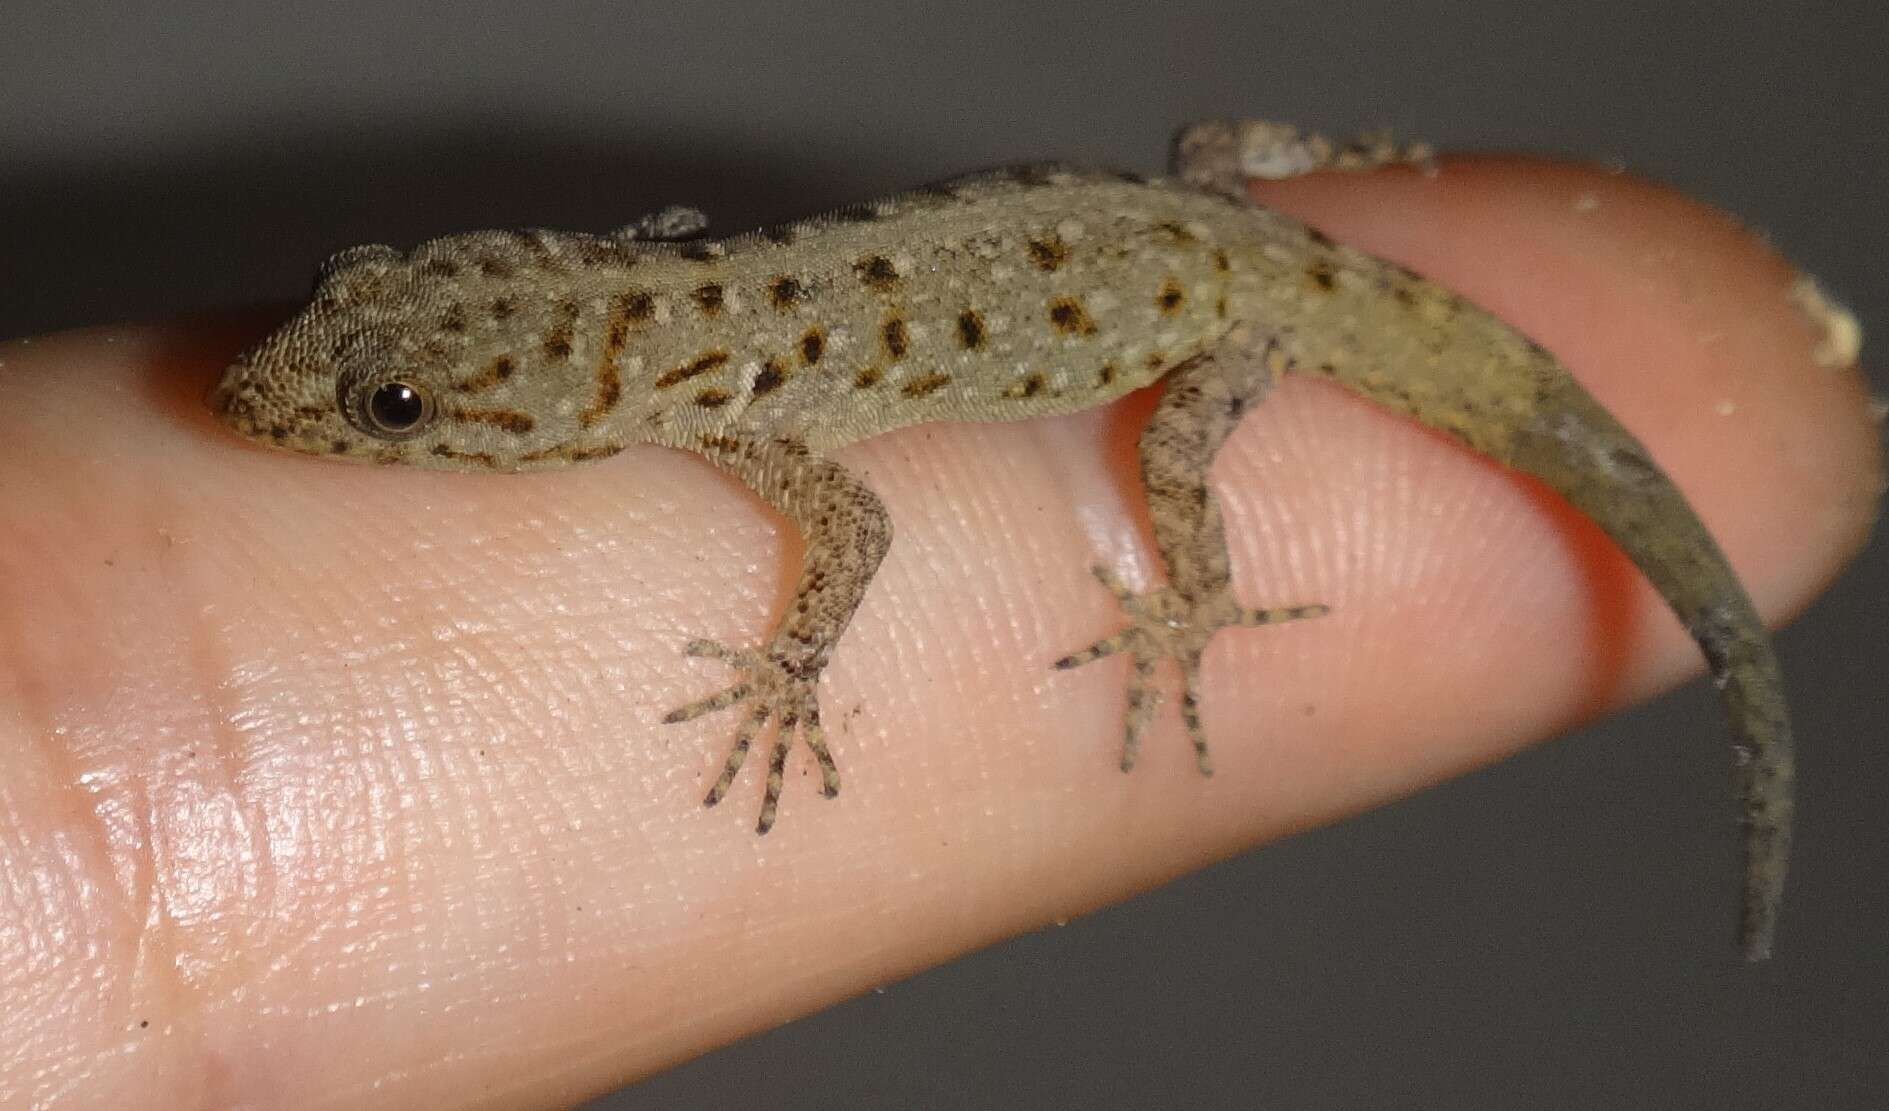 Image of Wiegmann's Striped Gecko